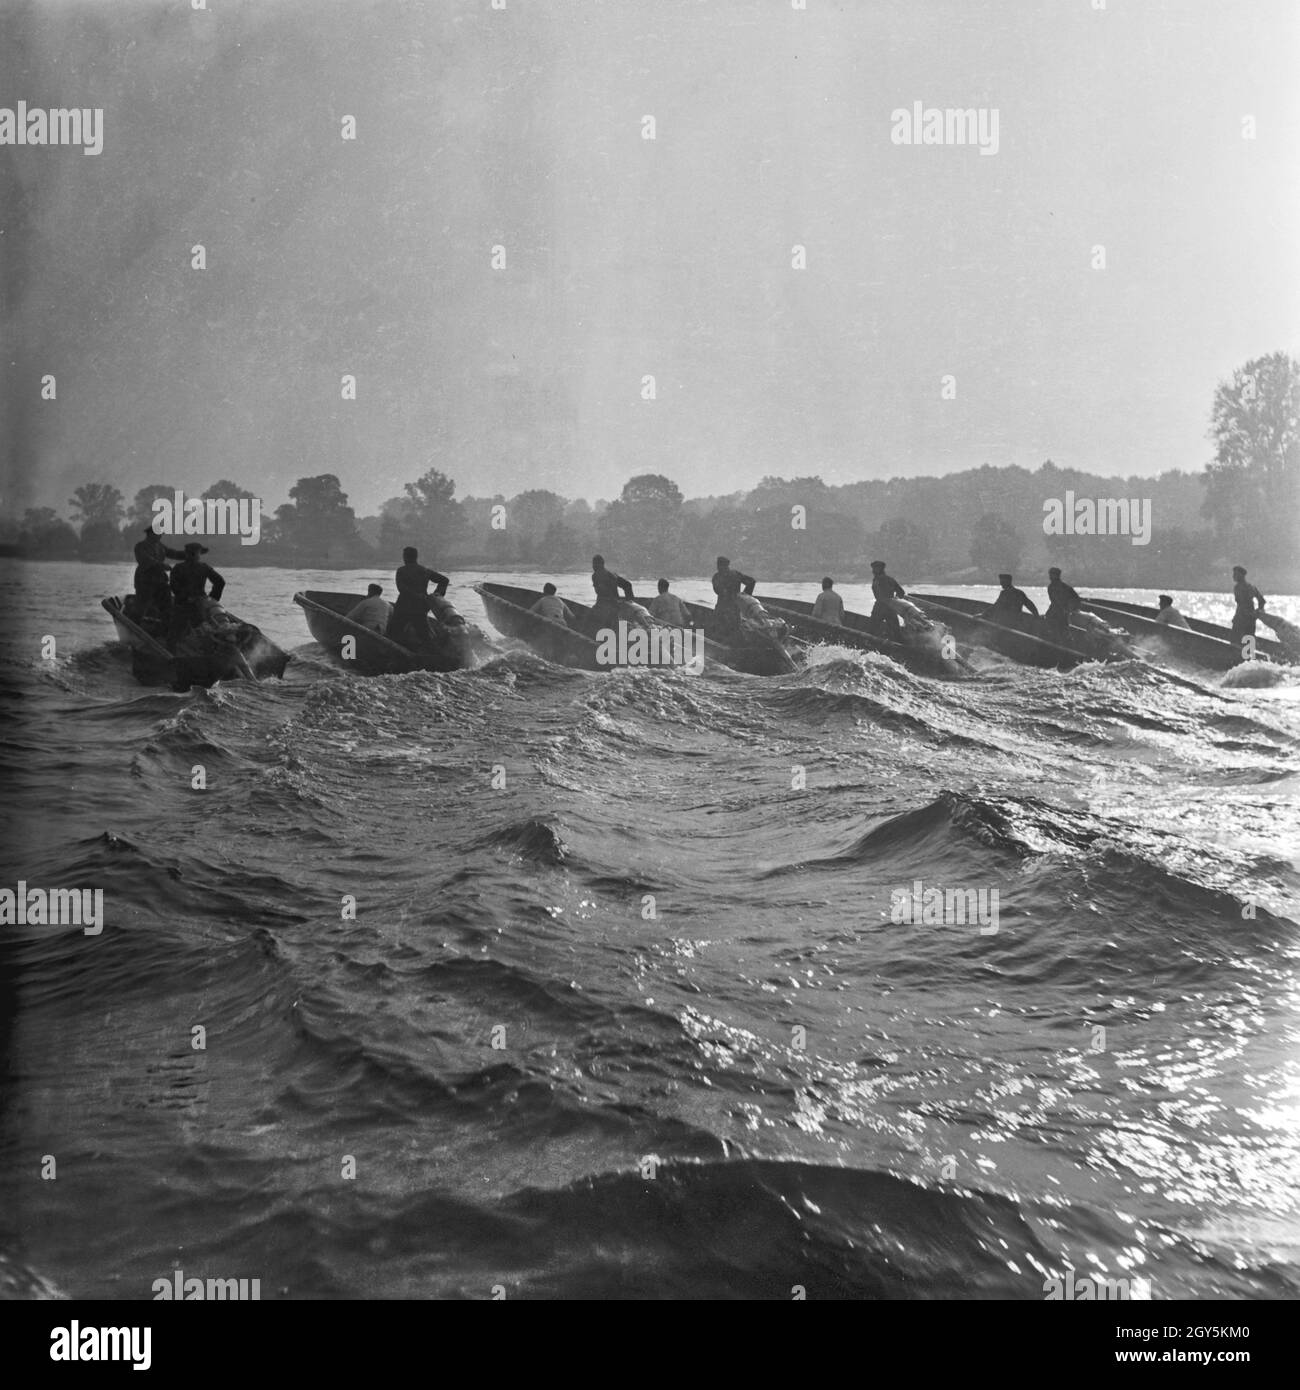 Original-Bildunterschrift: Pionier-Sturmboote fahren übungsmäßig in Reih' und Glied, Deutschland 1940er Jahr. Engineering storm boats in a row, GErmany 1940s. Stock Photo